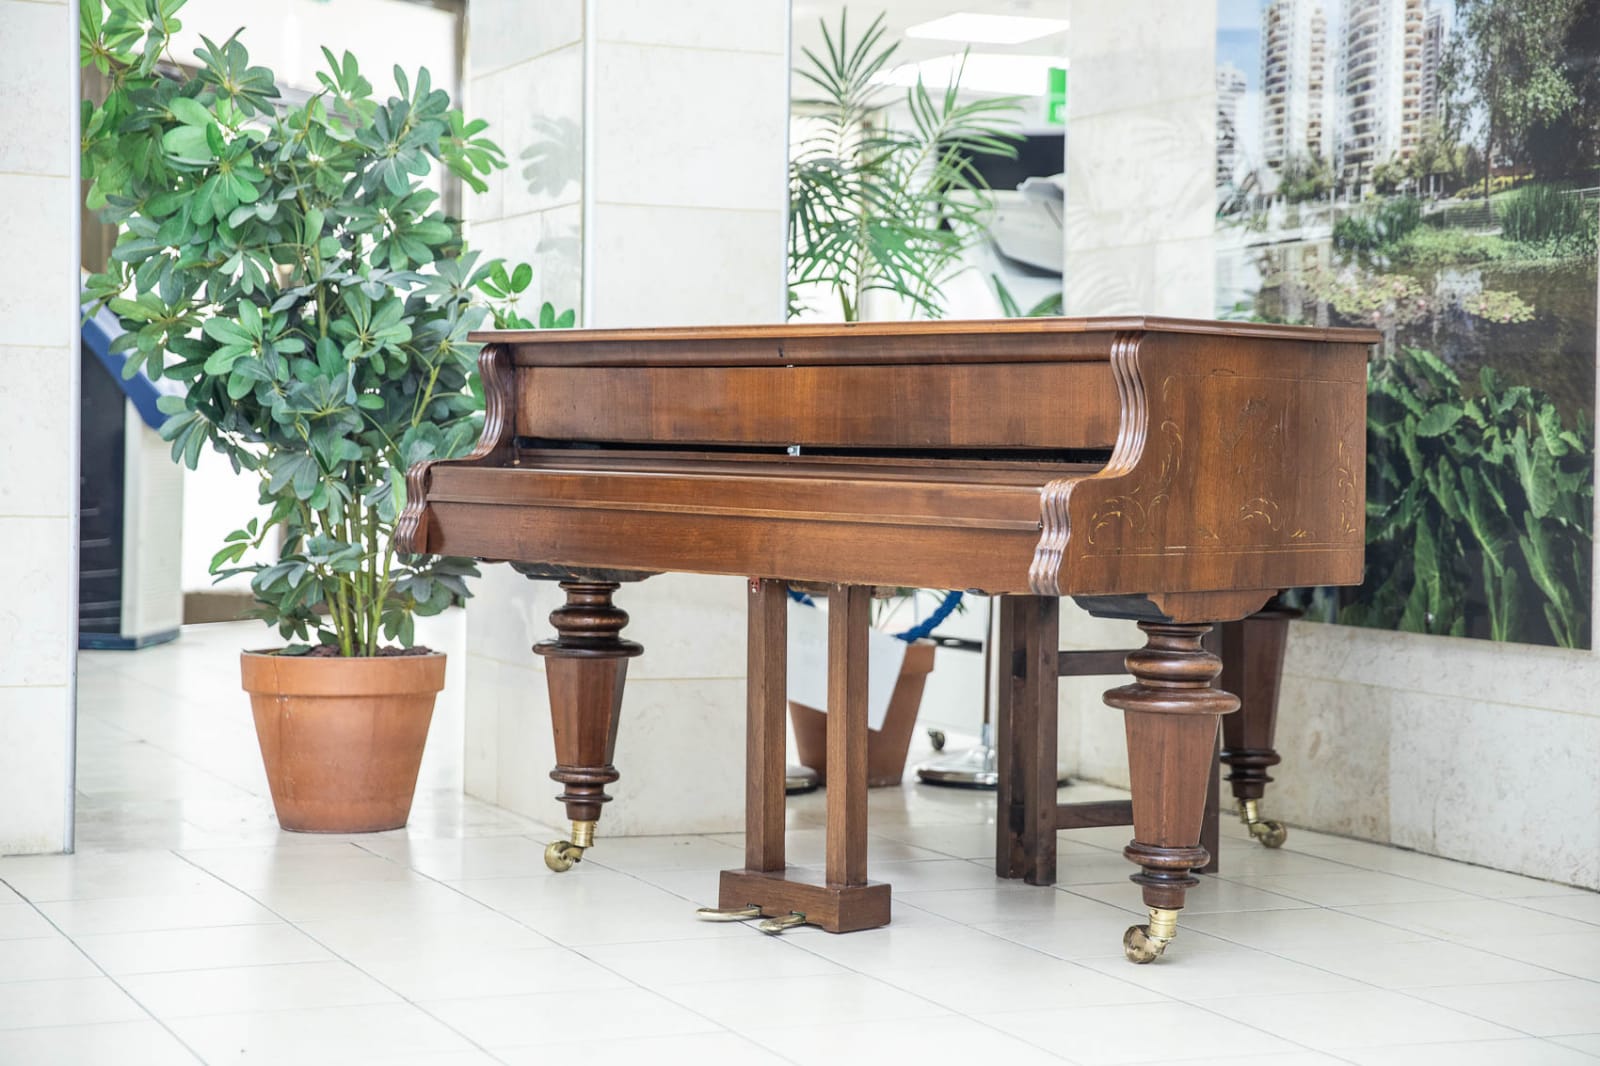 גלגולי הפסנתר המיתולוגי של משפחת סלומון עד שהגיע לבניין עיריית פ"ת